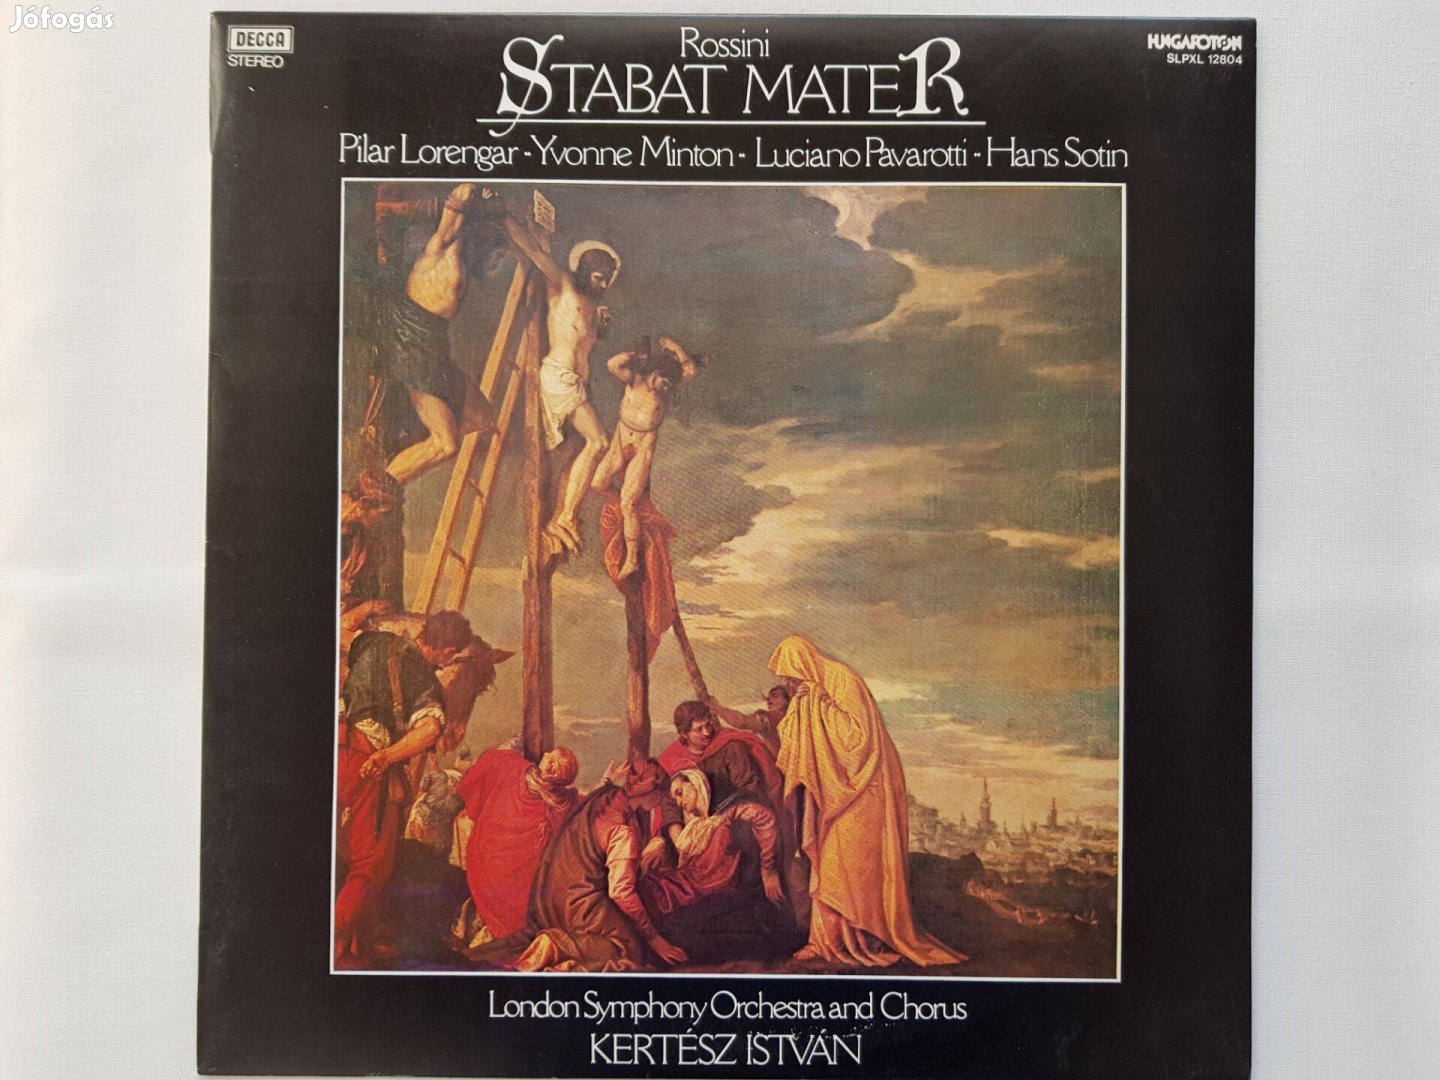 Rossini - Stabat Mater LP